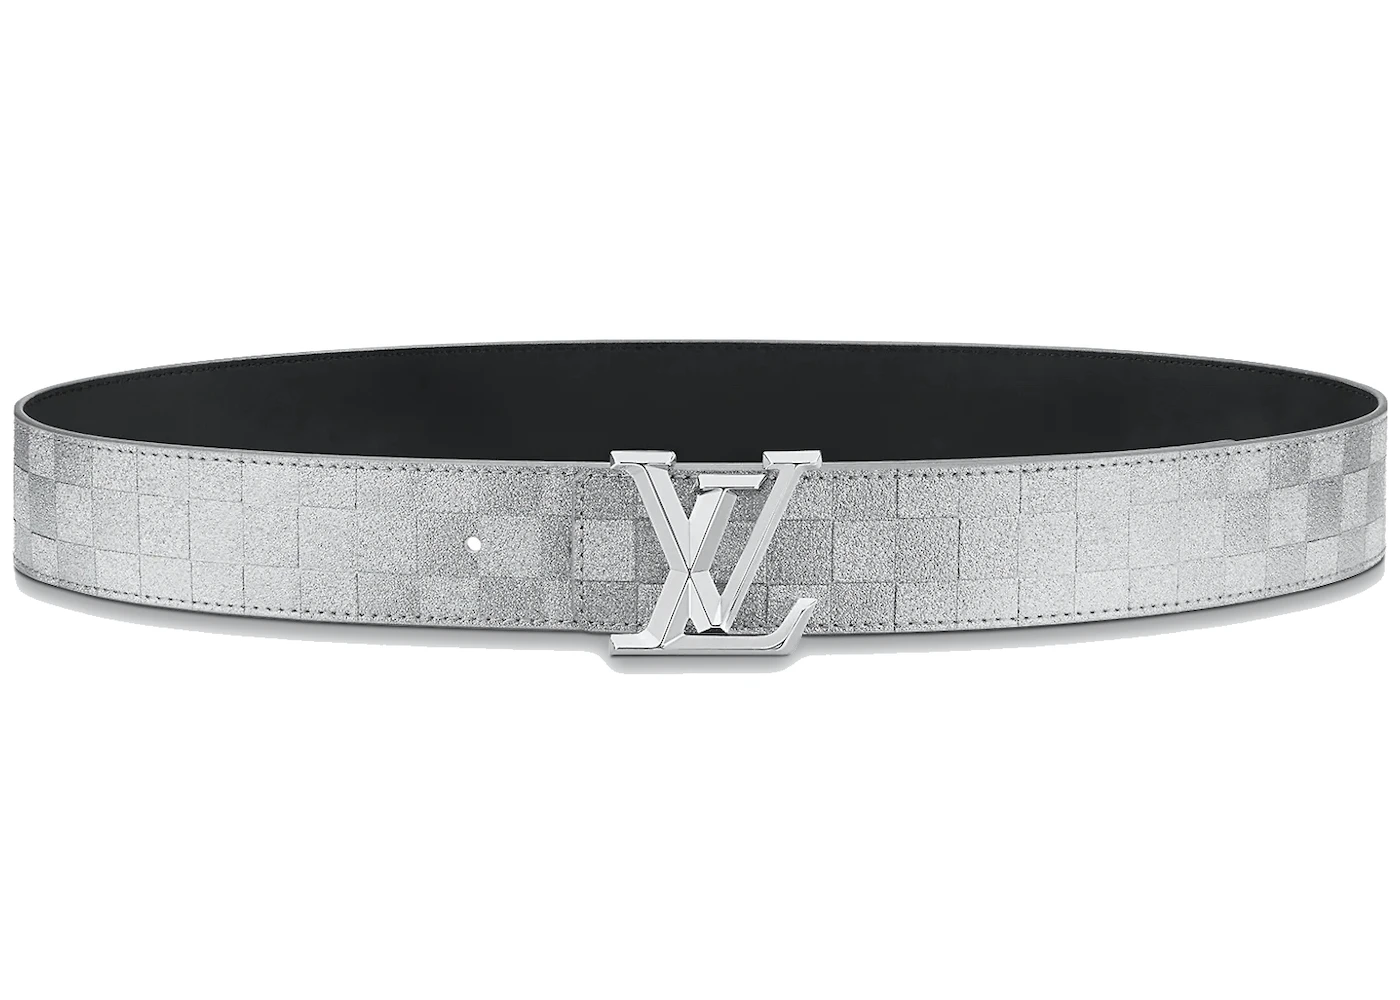 Fashion P  Lv belt, Louis vuitton belt, Discount louis vuitton